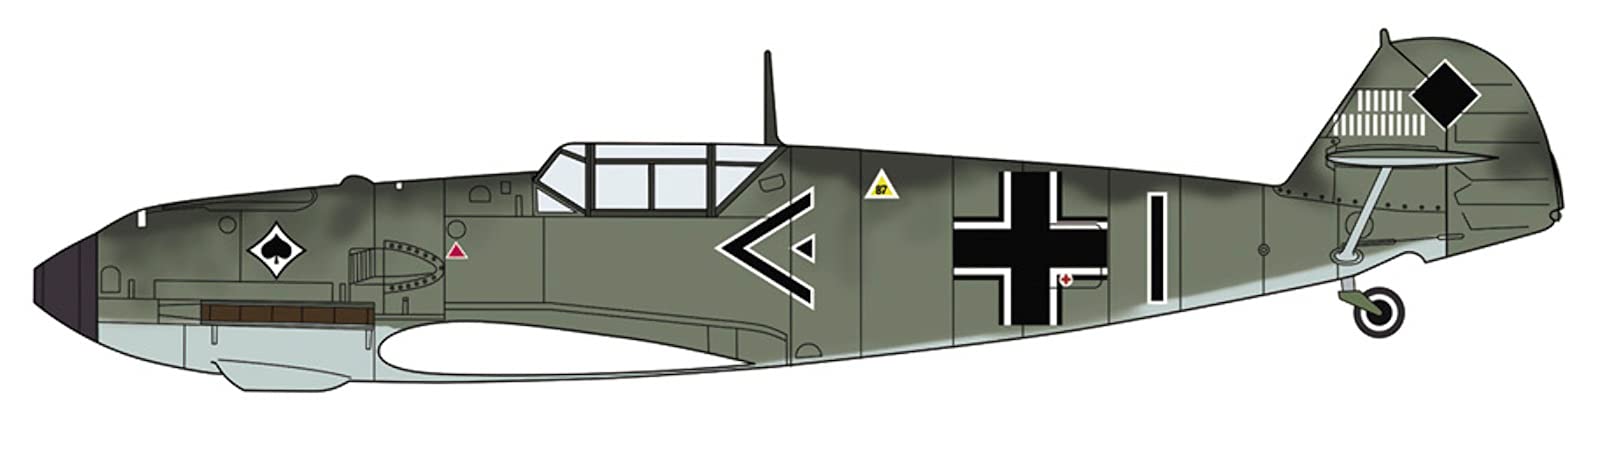 HASEGAWA 02332 Dewoitine D.520 &amp; Messerschmitt Bf109E Bataille de France 1/72 Scale Kit